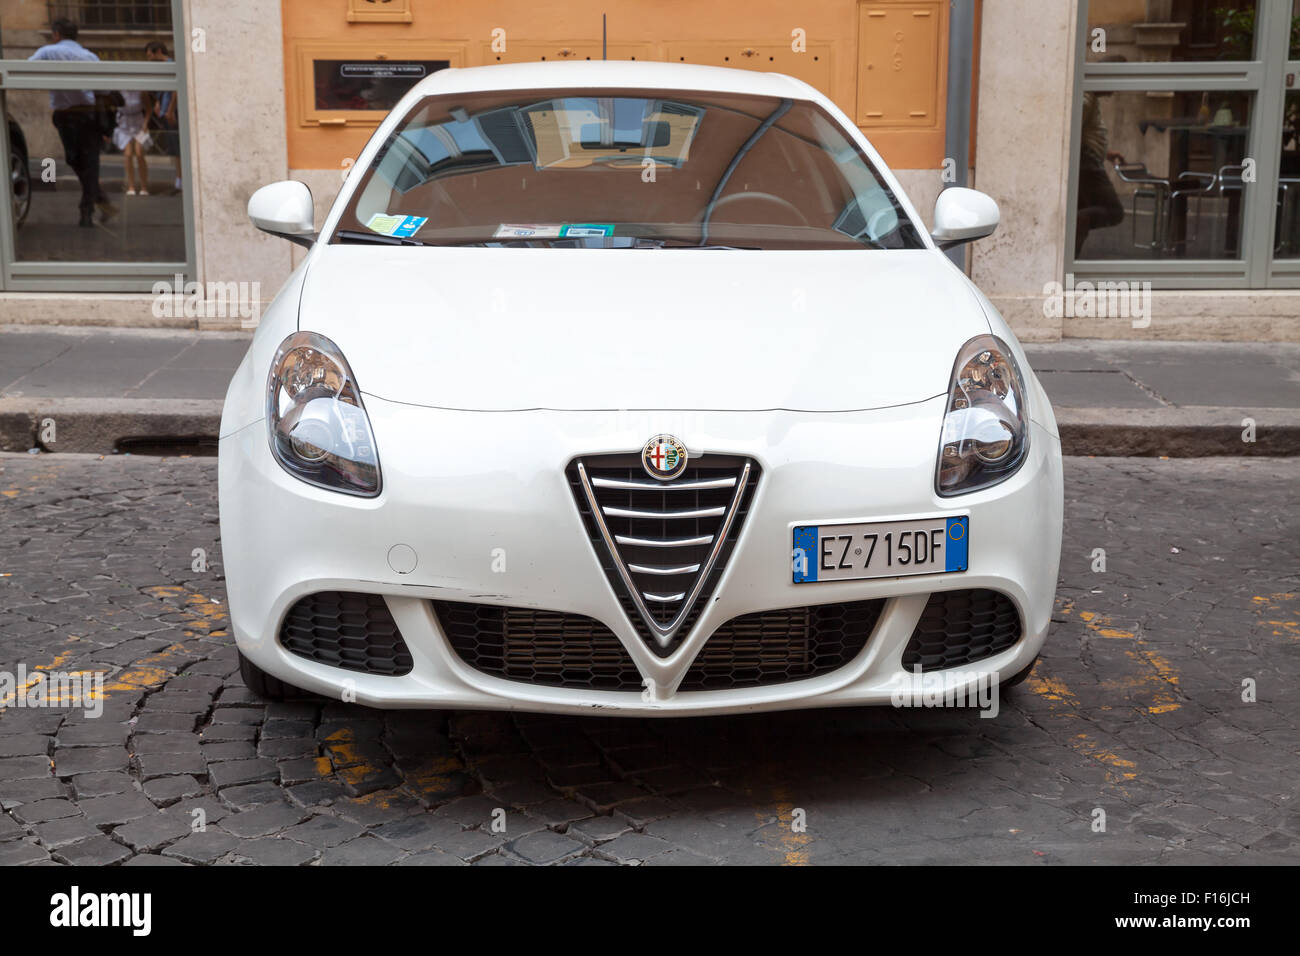 Rome, Italie - 7 août 2015 : Blanc Alfa Romeo Giulietta 940 Type de voiture est garée sur le bord de la ville, Close up vue avant Banque D'Images